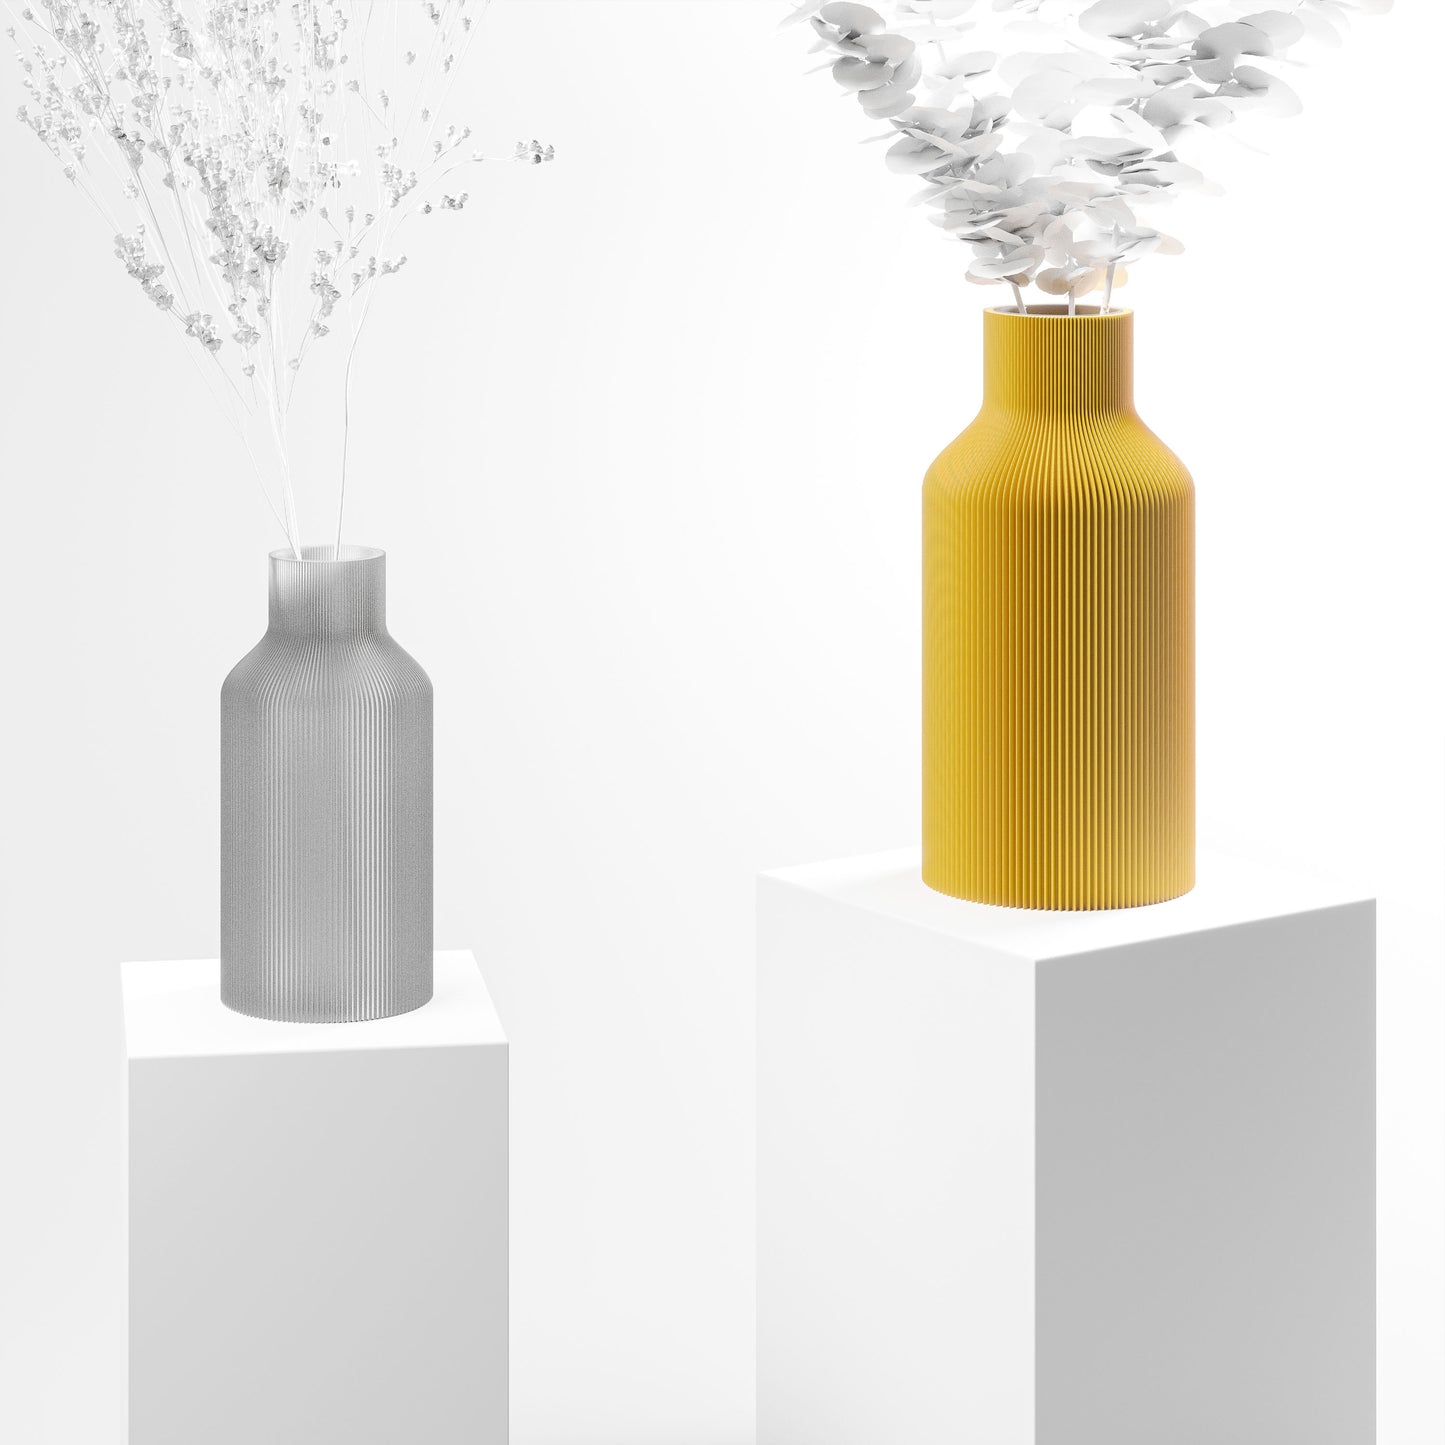 Stylische 3D Druck Vase mit feinen Rillen | 100% recyclebar | Form: Flasche | Farbe: gelb matt 